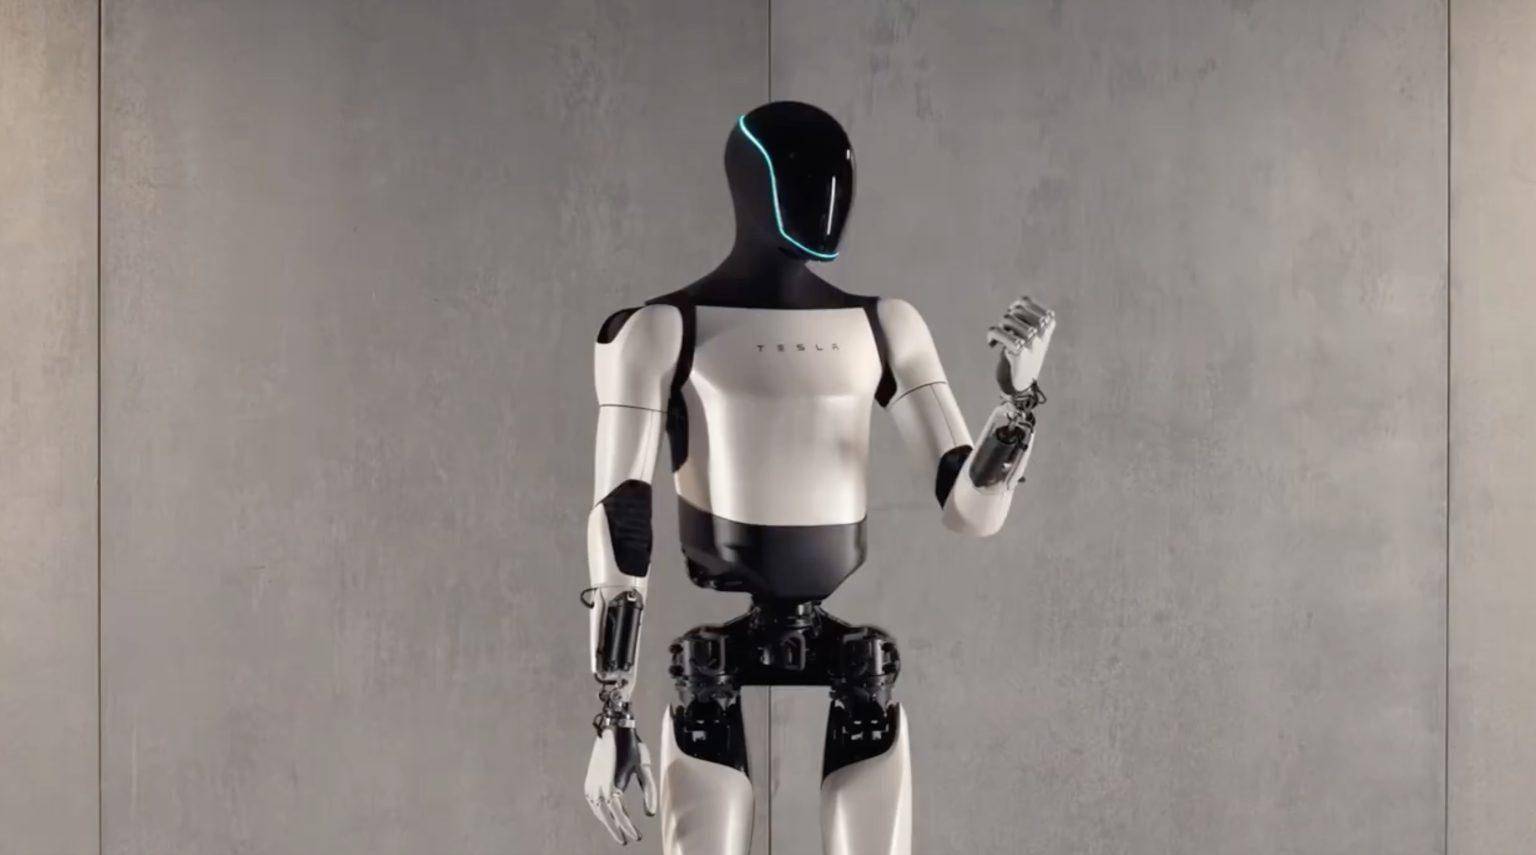 特斯拉再次展示第二代人形机器人optimus步行能力:更加稳健流畅